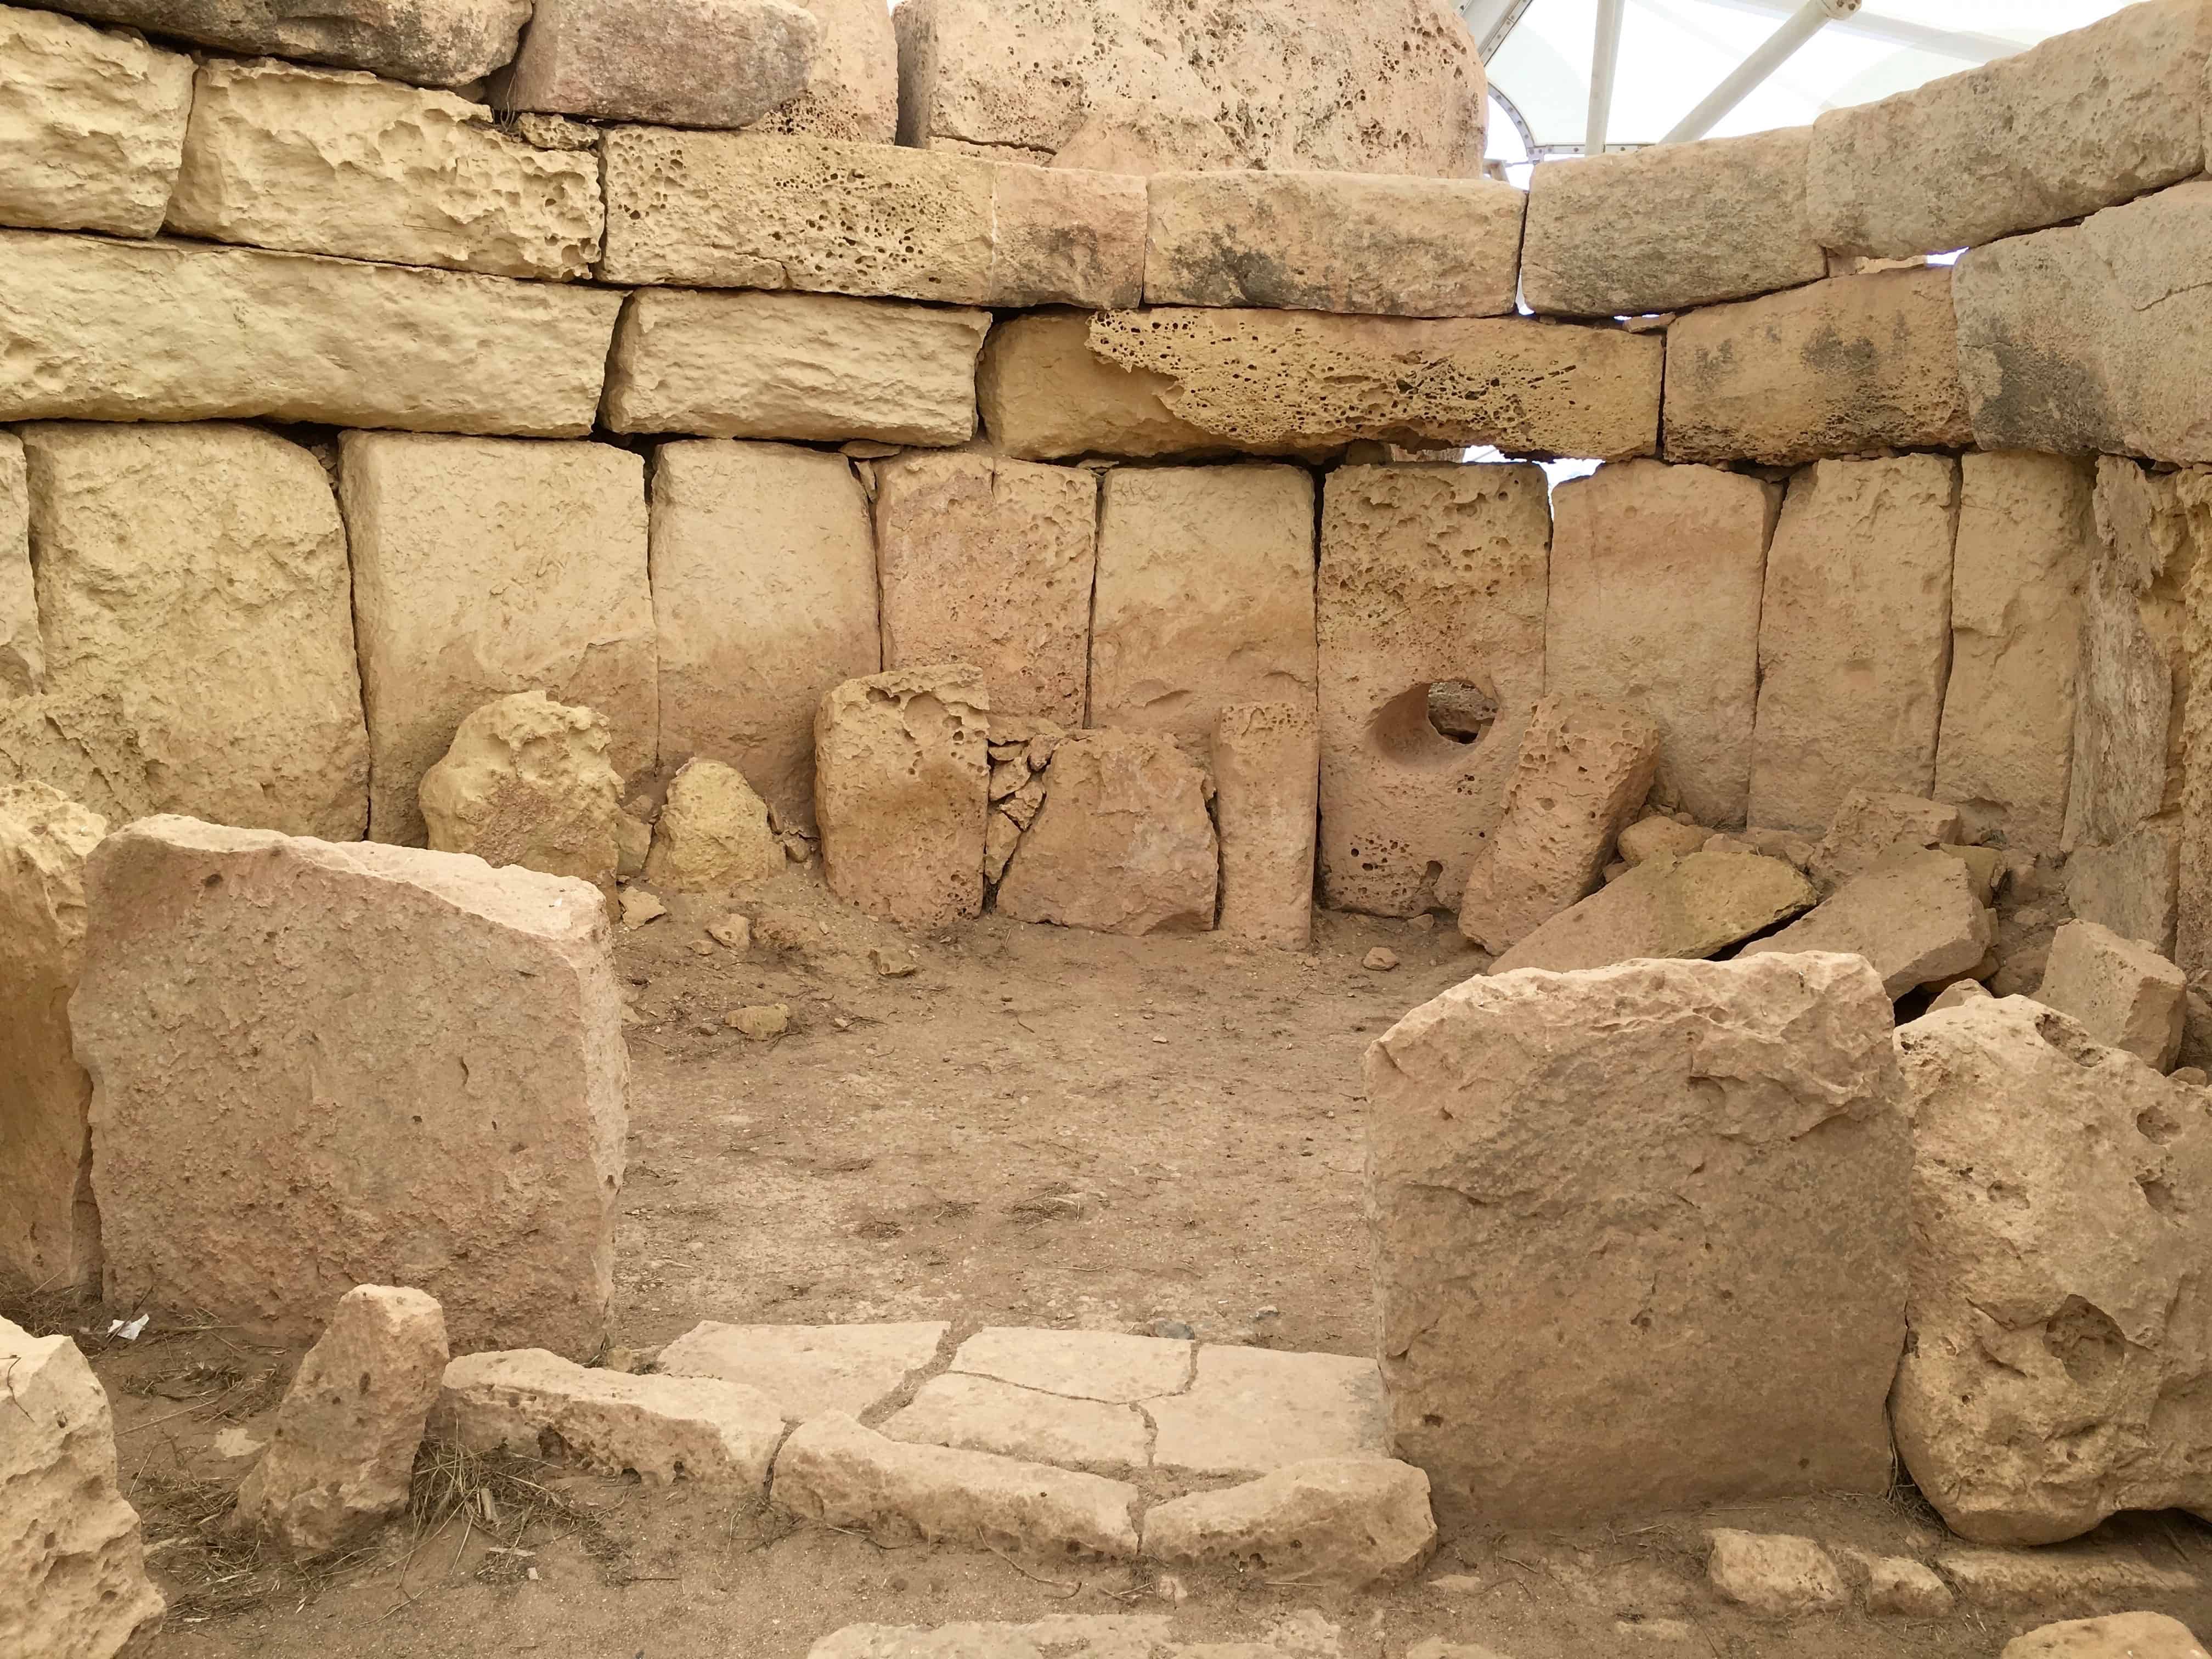 Hagar Qim, Malta: Temple apse with an 'oracle hole'.